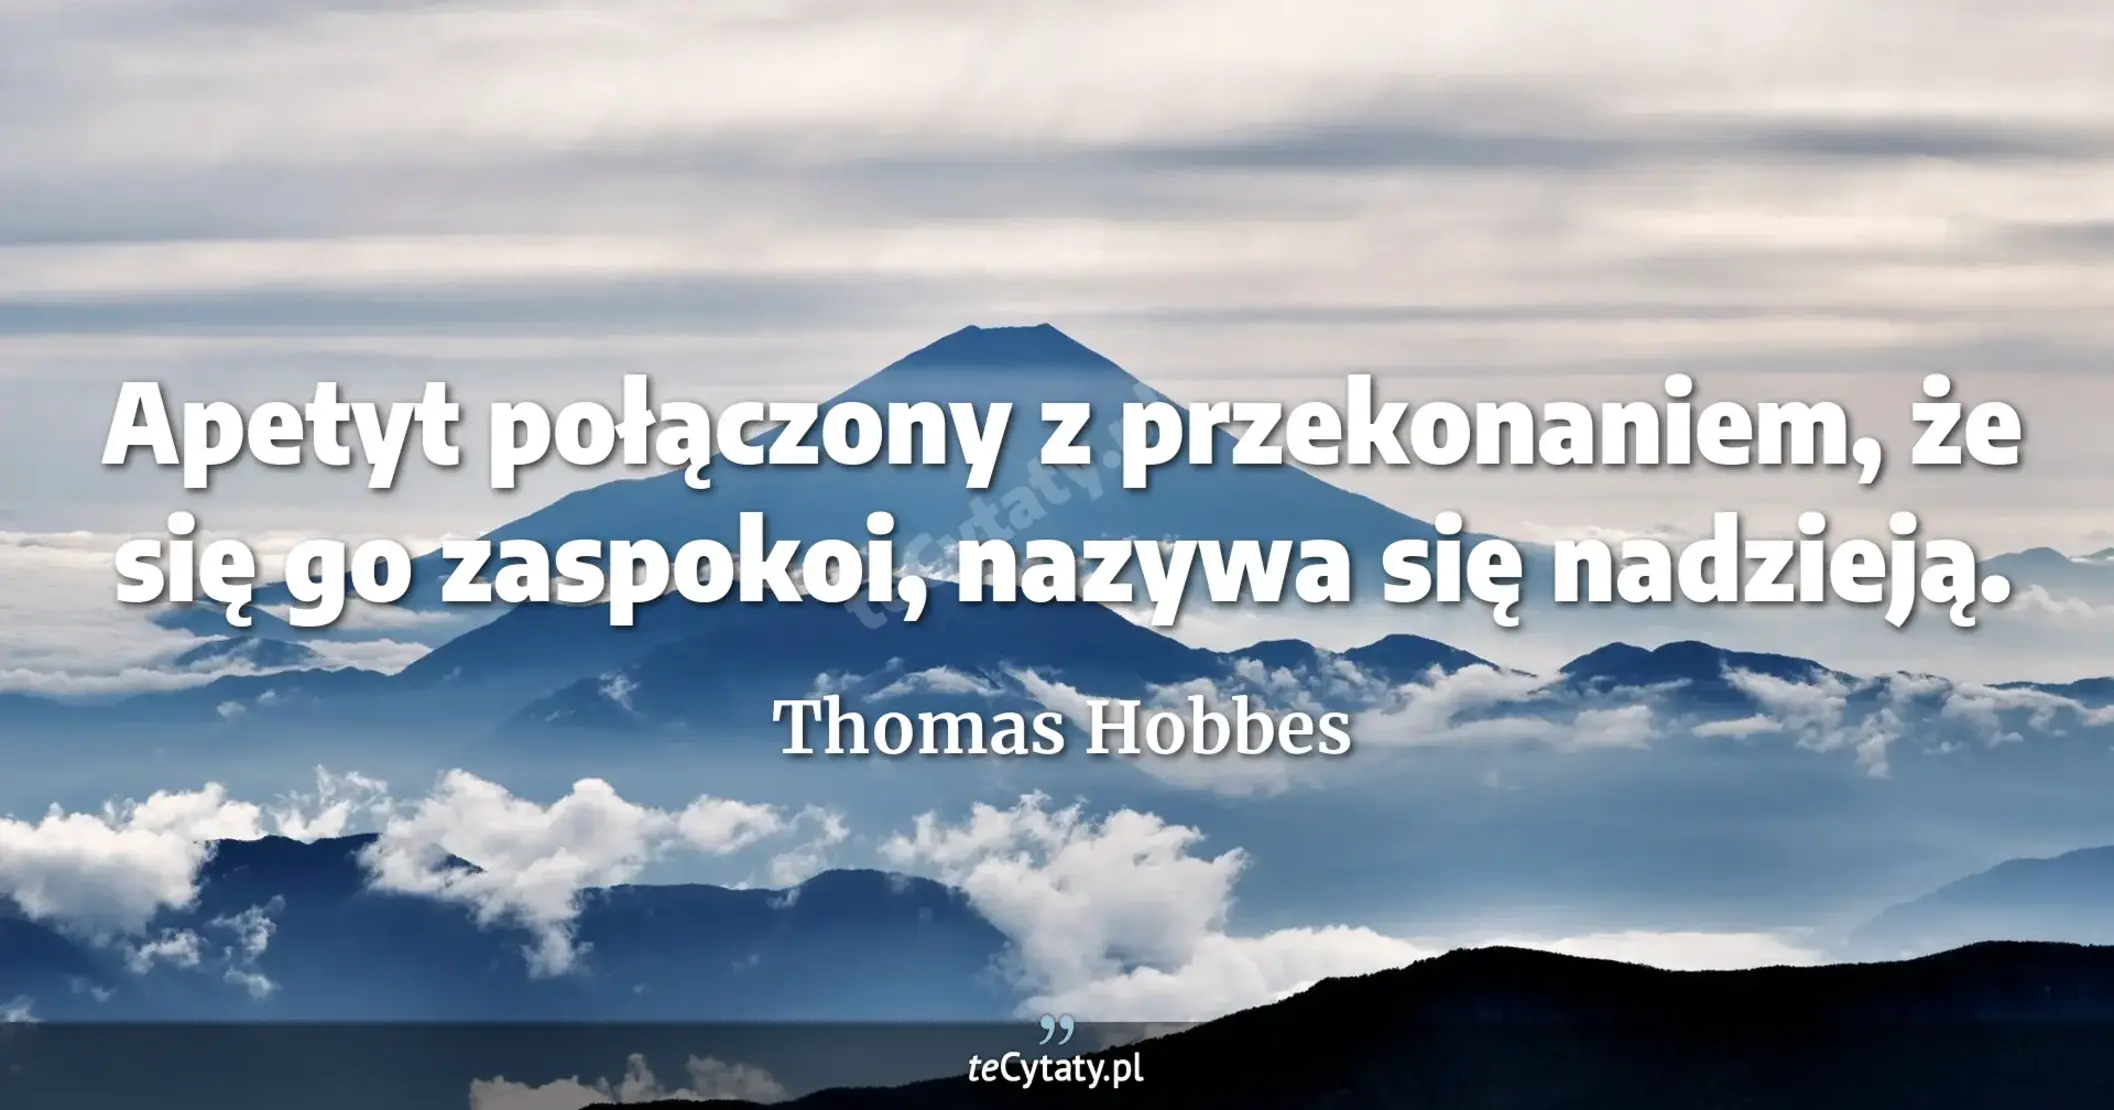 Apetyt połączony z przekonaniem, że się go zaspokoi, nazywa się nadzieją. - Thomas Hobbes